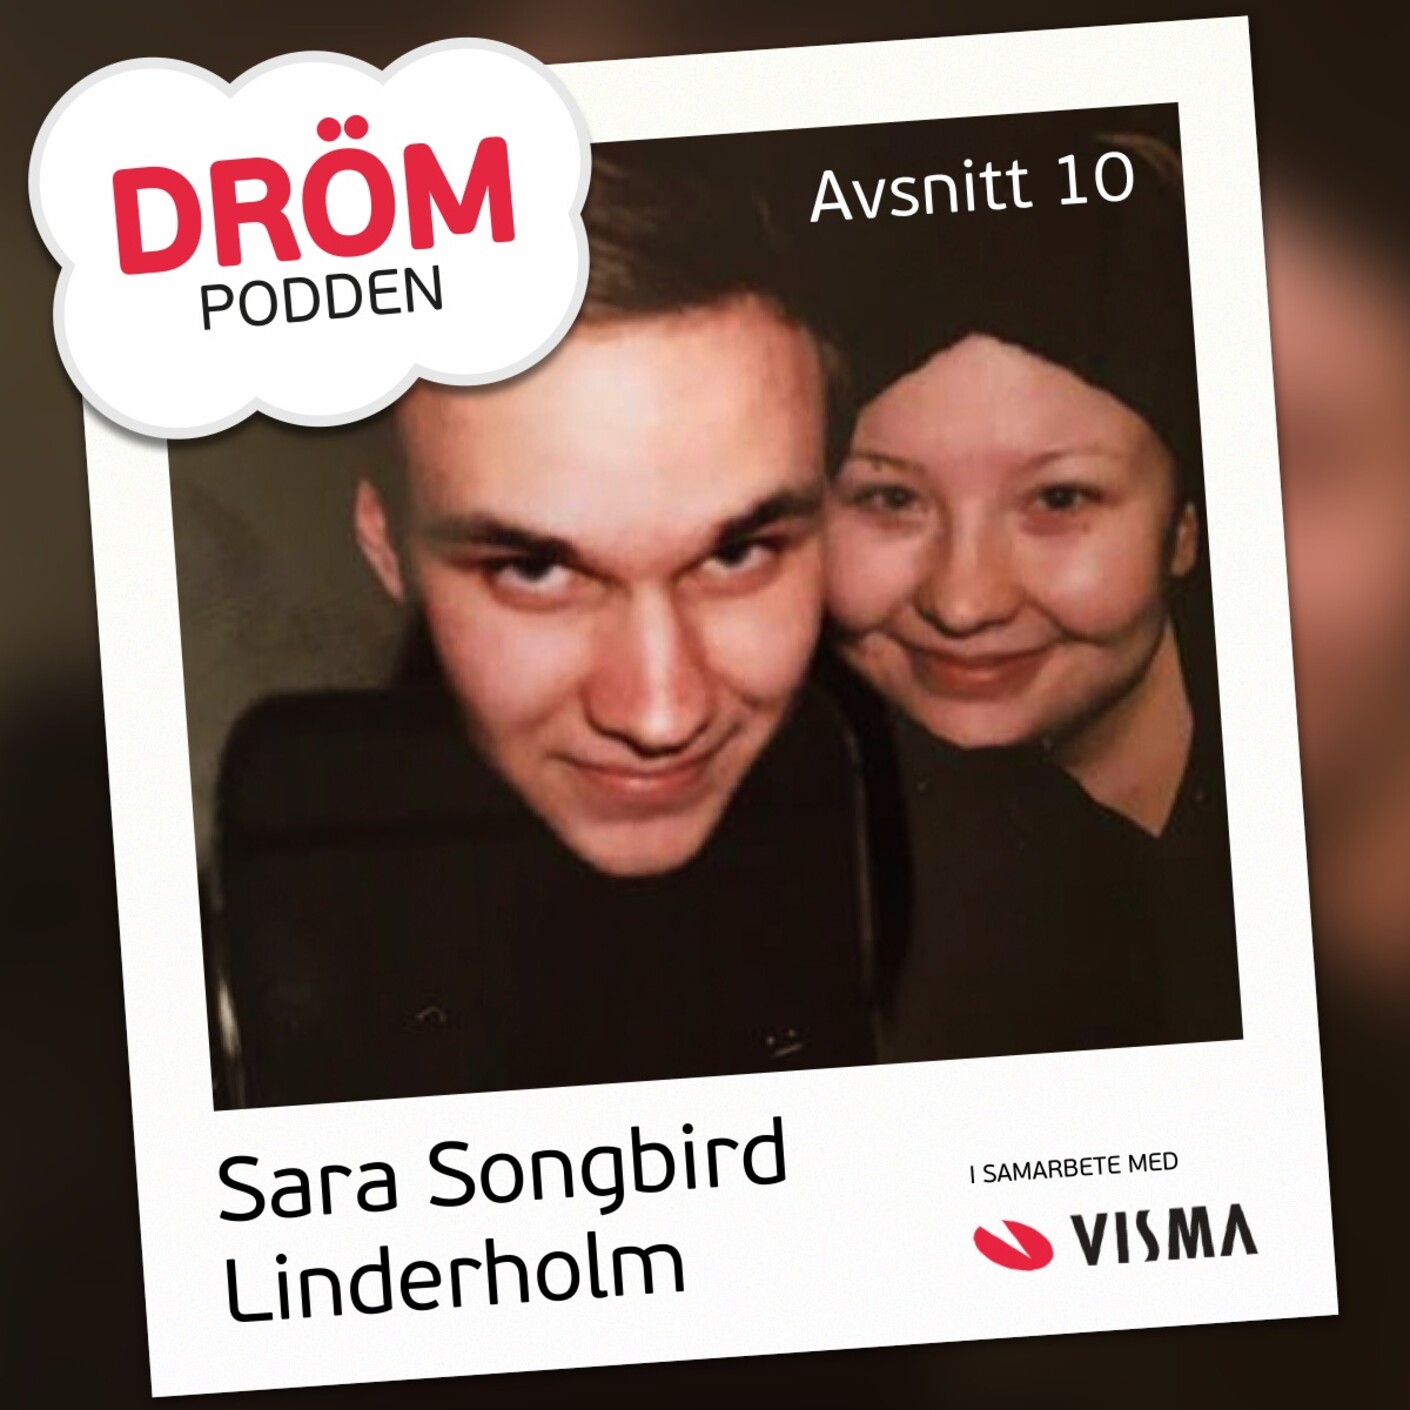 10. Sara SaraSongbird Linderholm